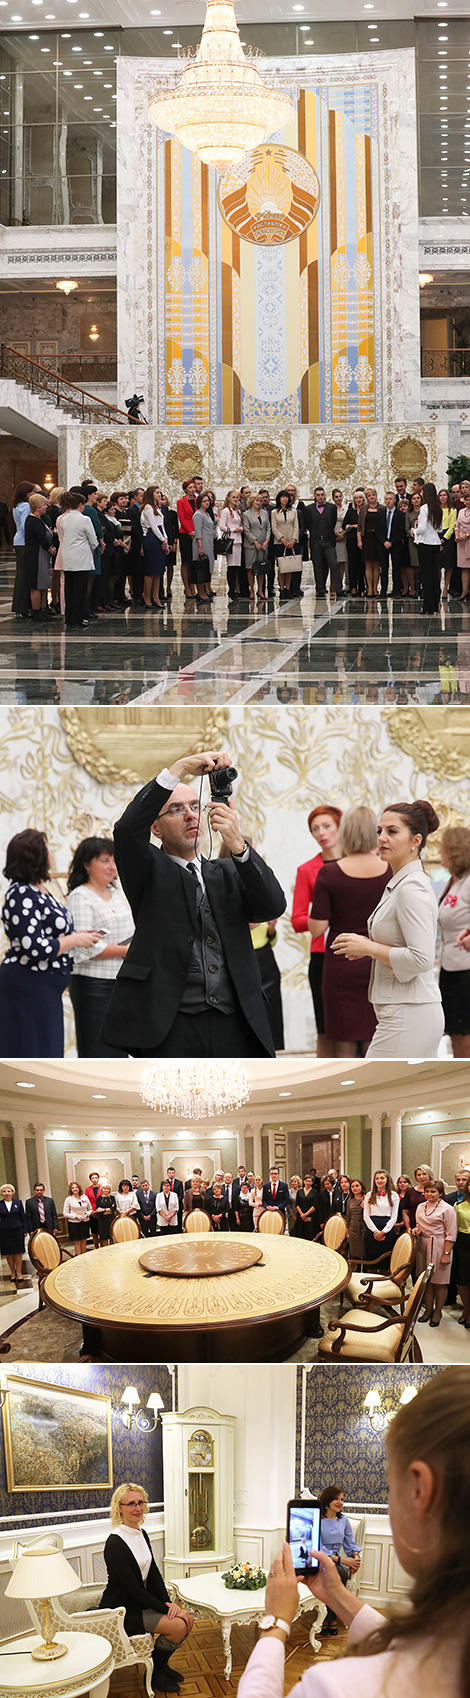 Финалисты конкурса "Учитель года Беларуси" побывали с экскурсией во Дворце Независимости